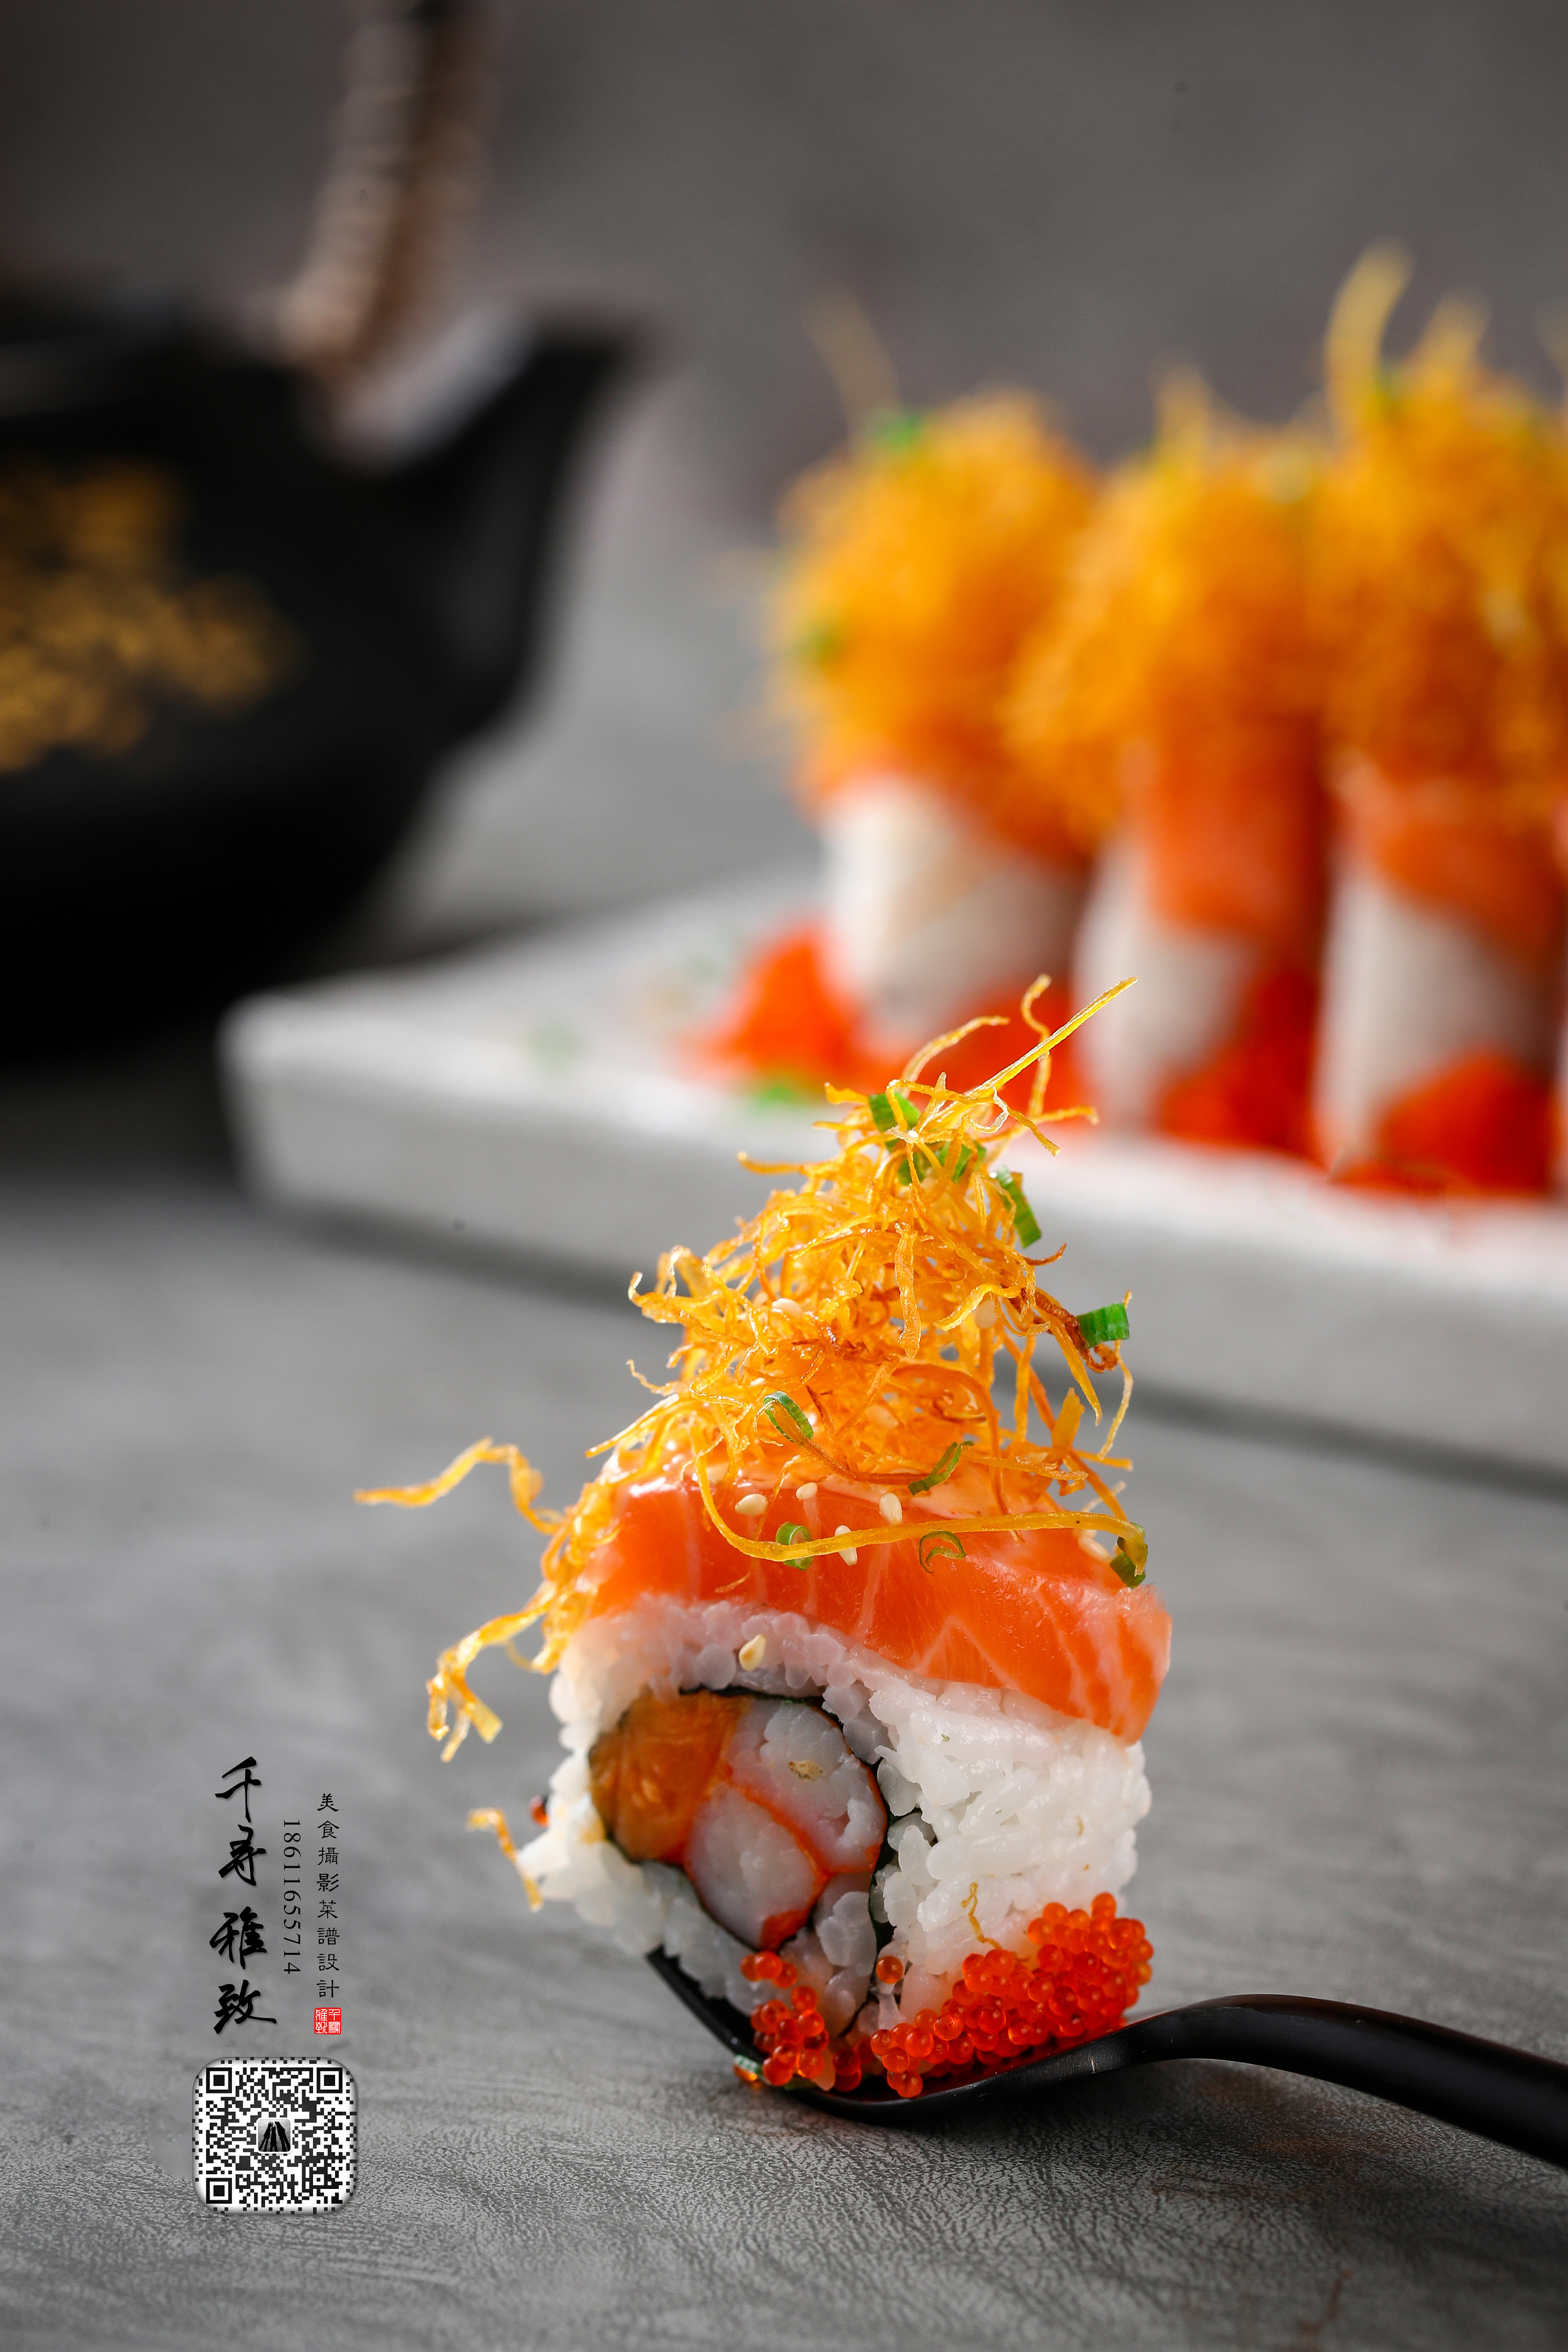 美食摄影菜品拍摄菜谱设计千寻雅致日本料理寿司